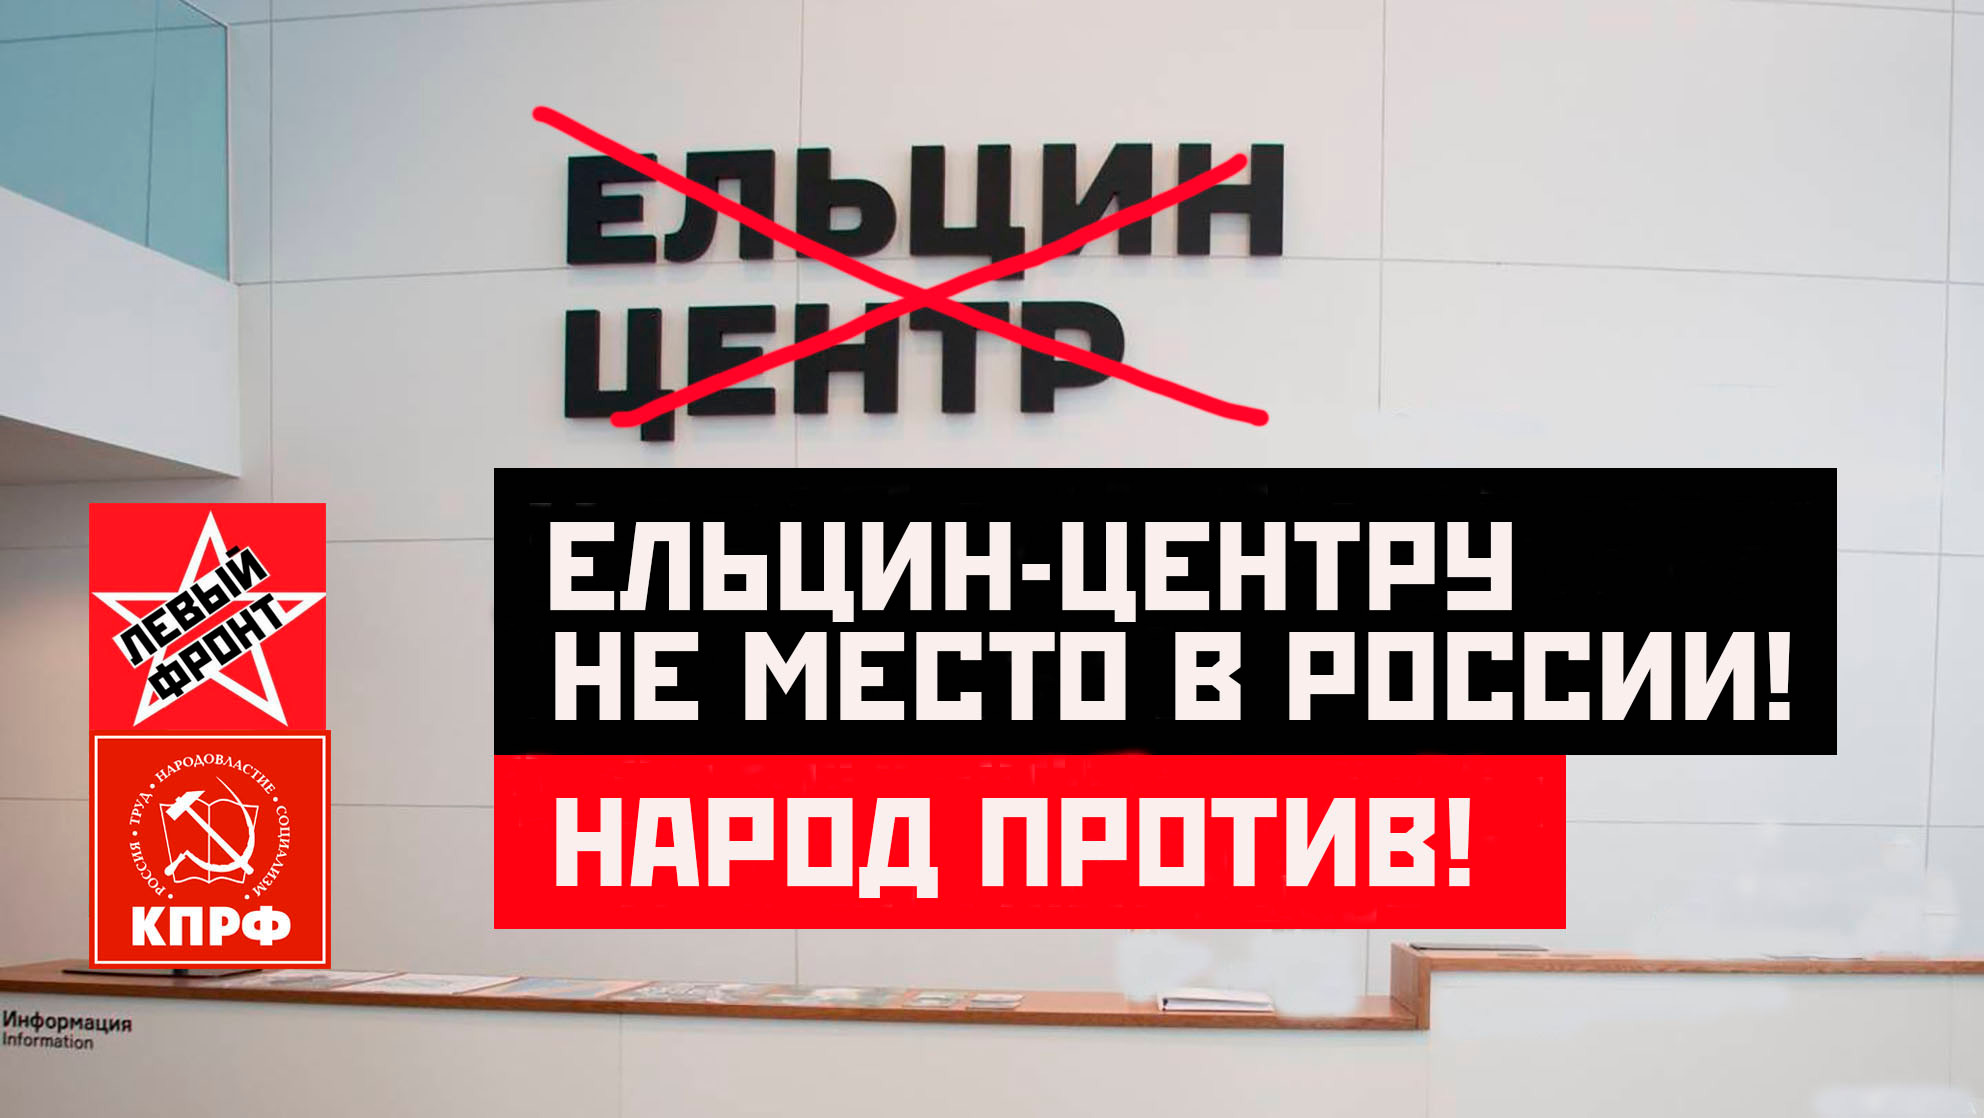 Депутат Госдумы Анастасия Удальцова предлагает закрыть «Ельцин Центр» и убрать имя Ельцина из названий библиотек, музеев и других объектов